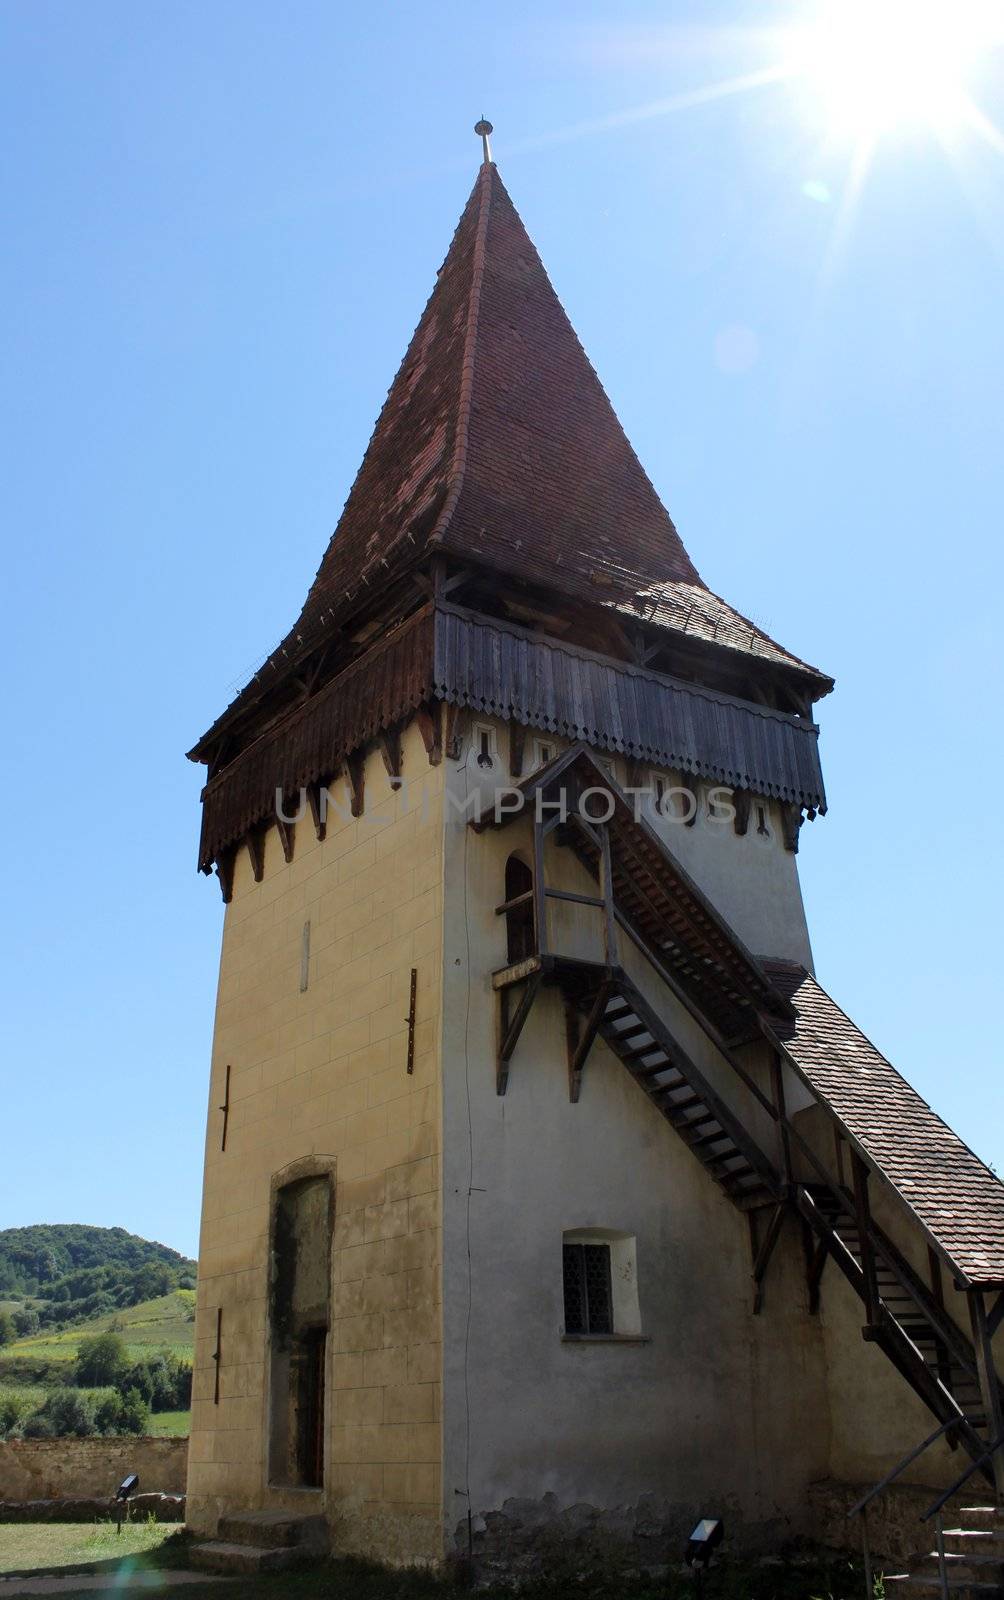 Tower of Biertan by Lirch